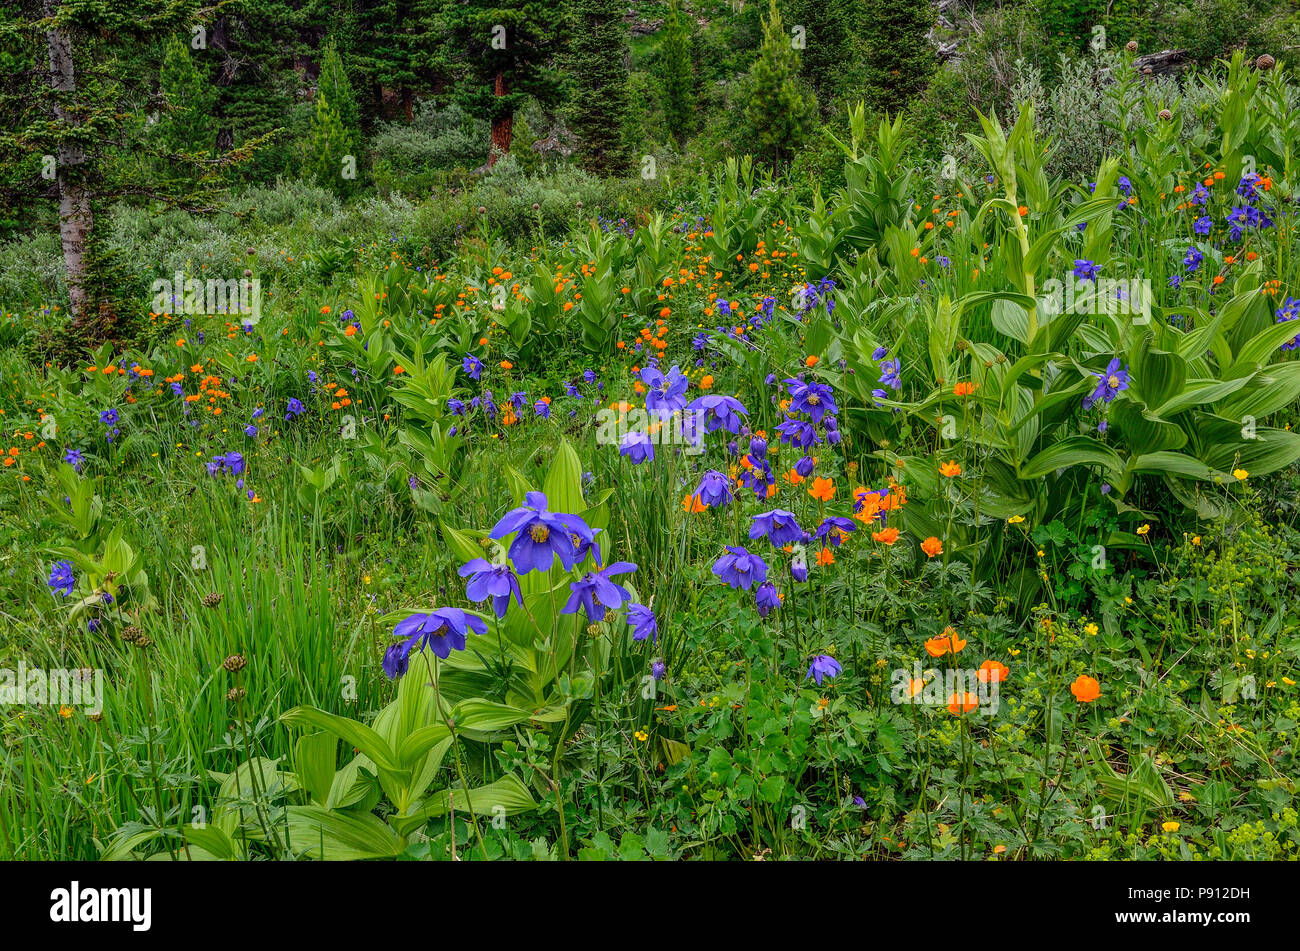 Pintoresco floral de fondo de verano - el florecimiento prados alpinos con coloridas flores silvestres de cerca: aquilegia azul, naranja ranúnculos y otras hierbas Foto de stock